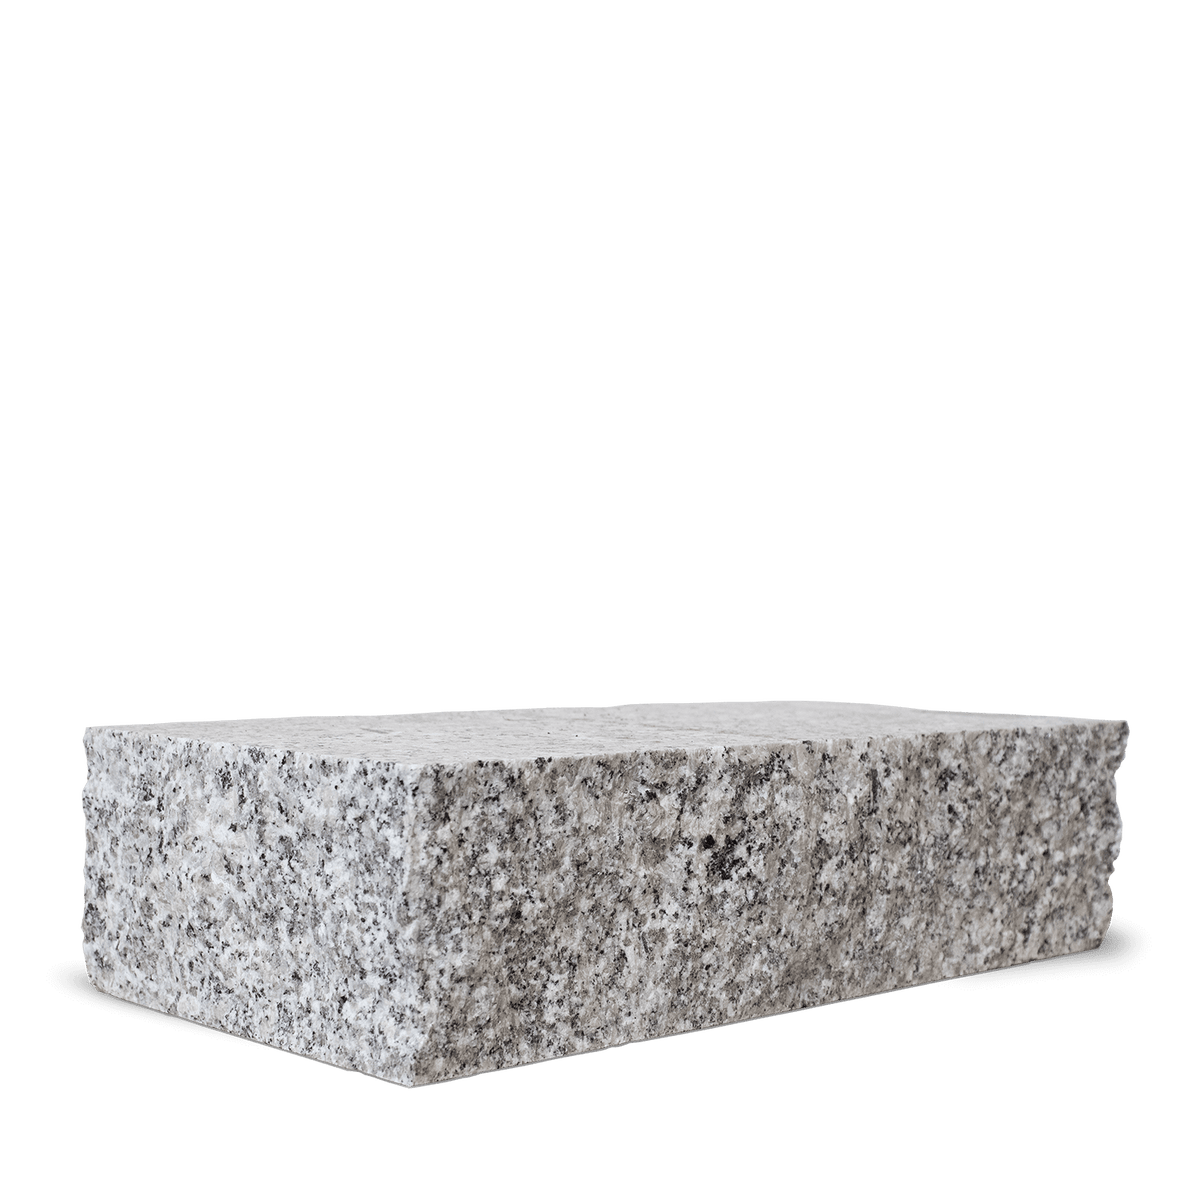 Galamio Granit Randsteine 40*20*10 » gesägt & gebrochen « 900kg